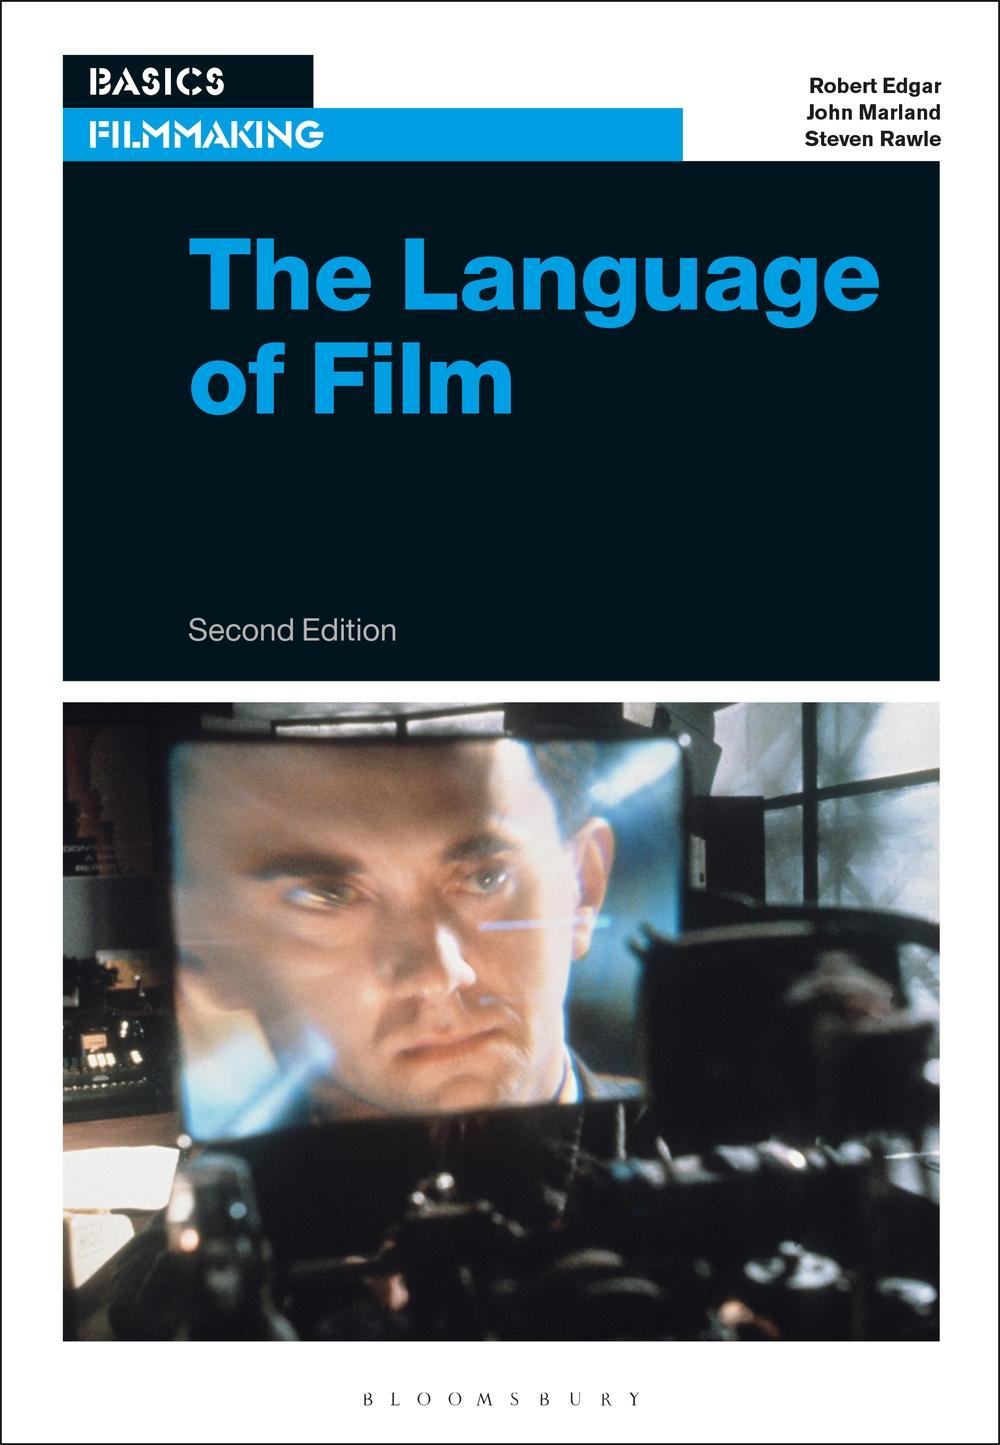 Language of Film